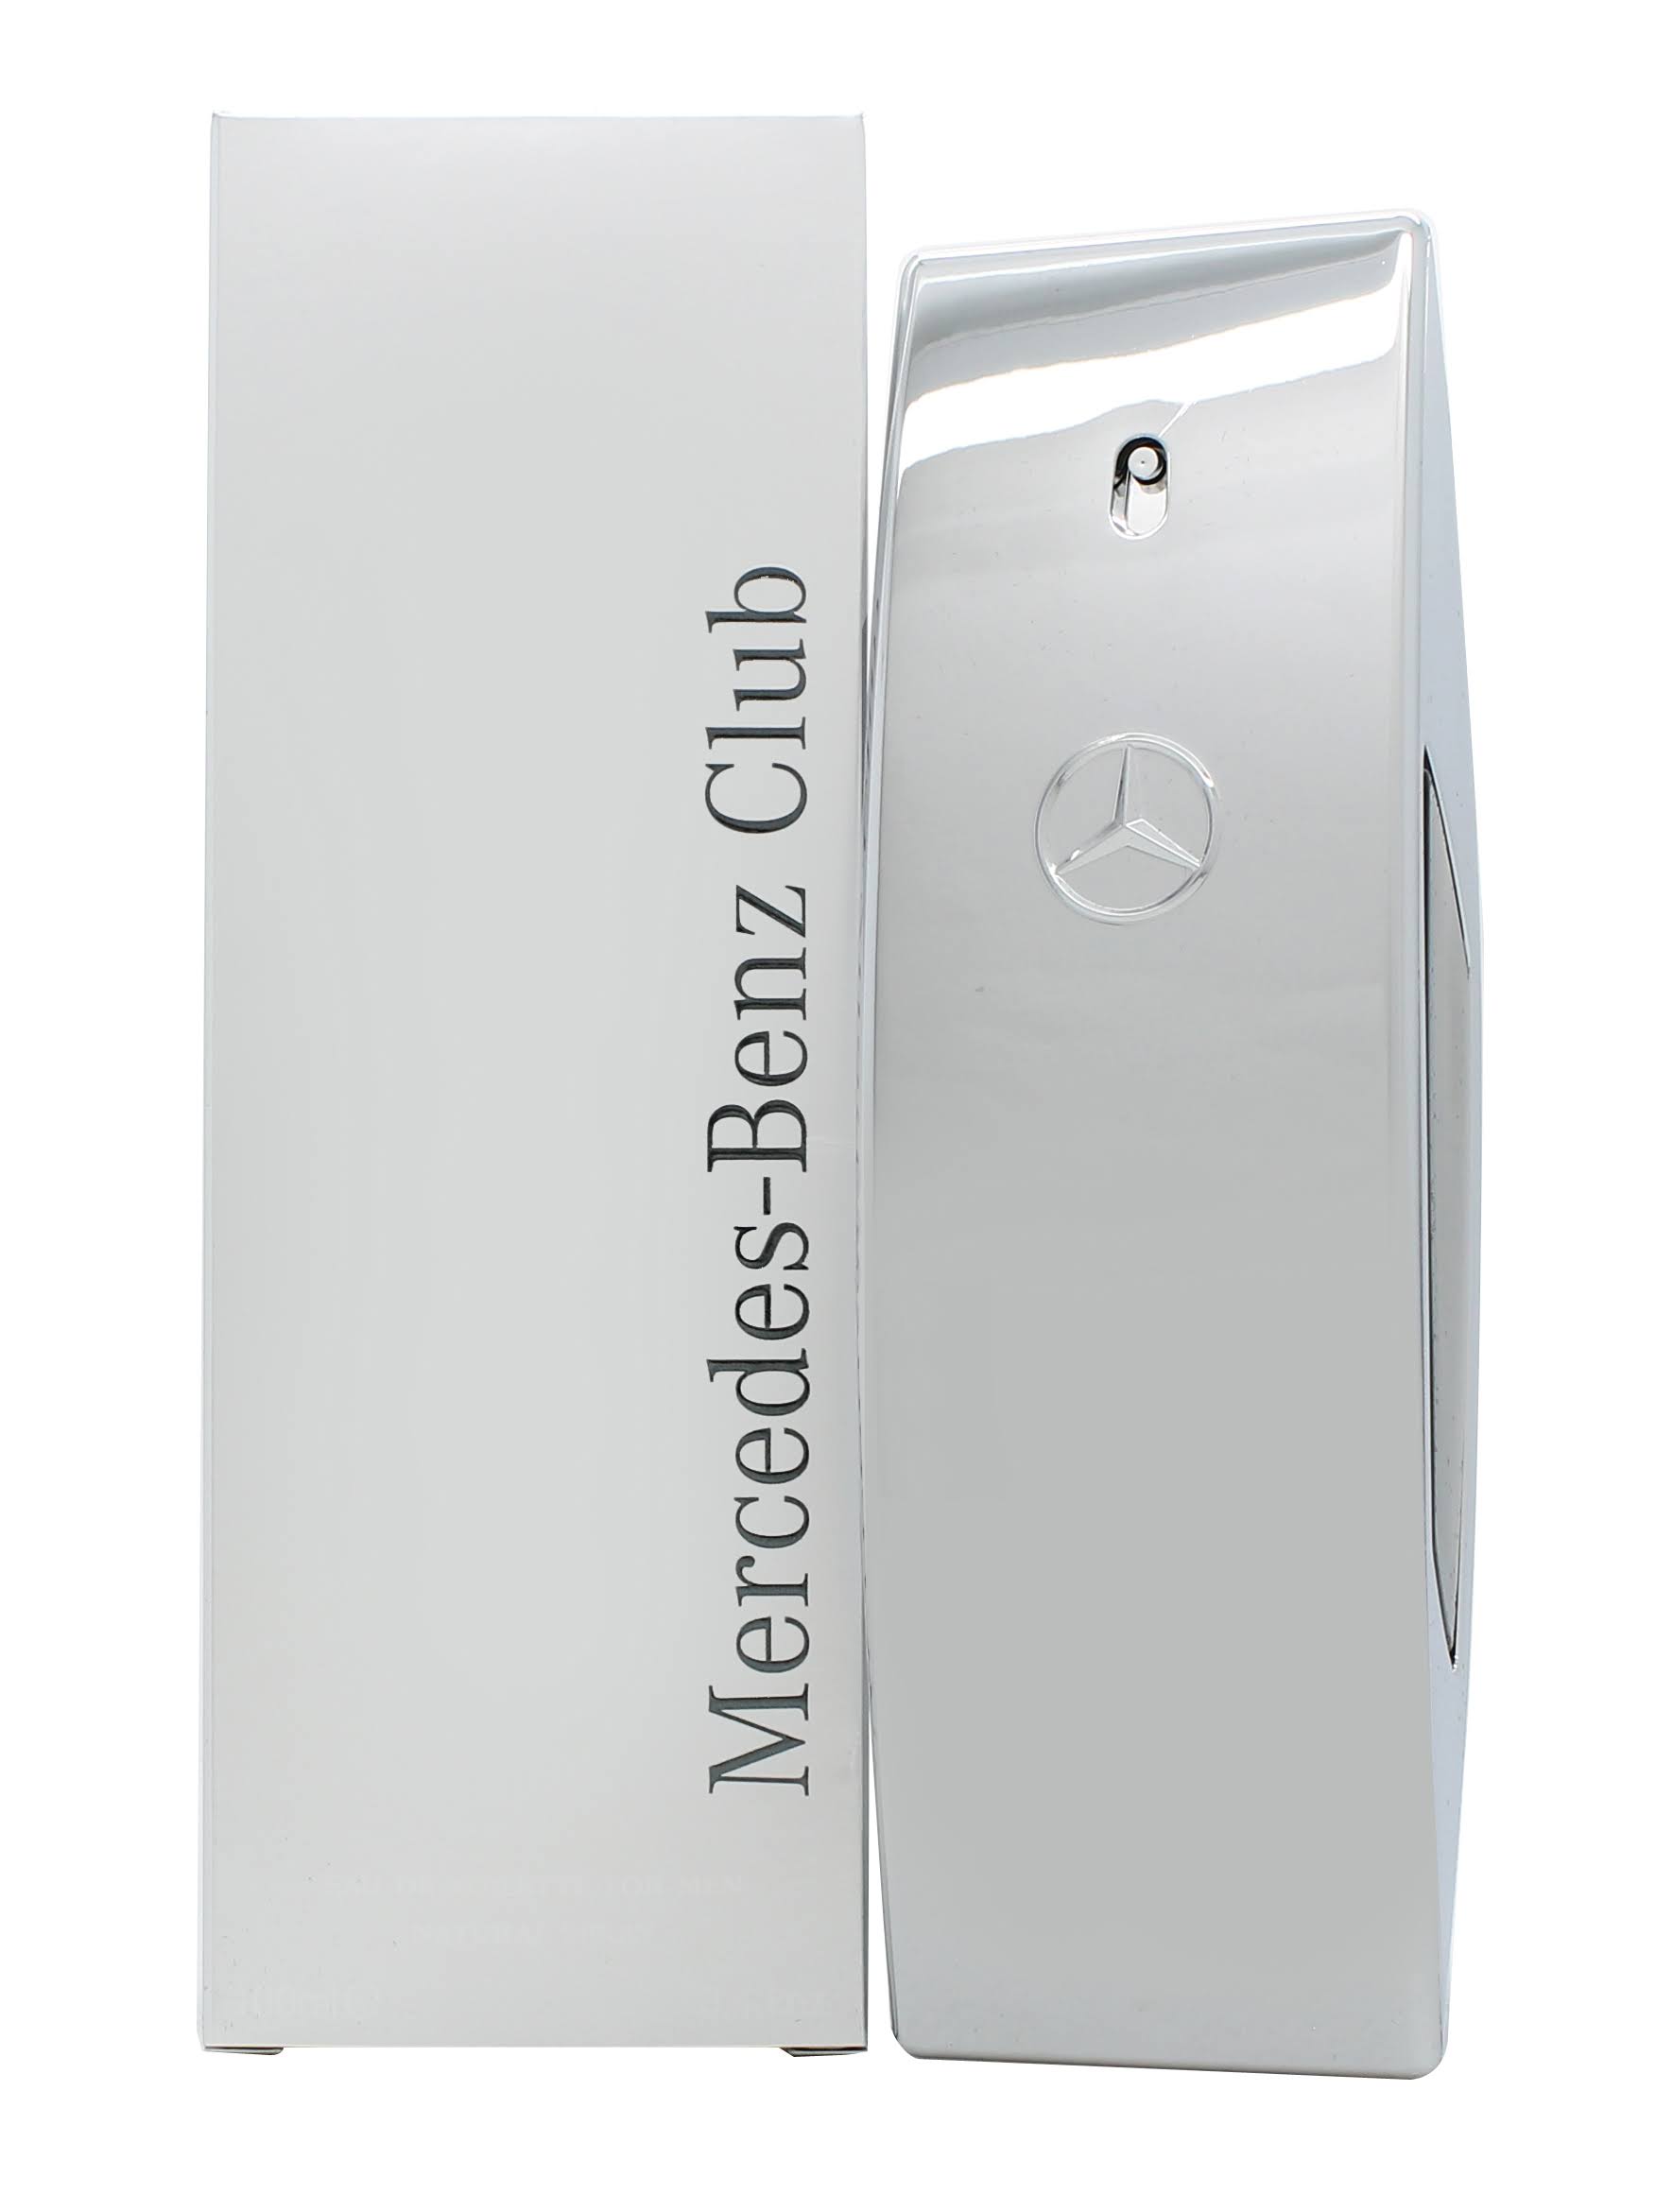 Mercedes Benz Club By Mercedes Benz 3.4 oz For Men Eau De Toilette Spray